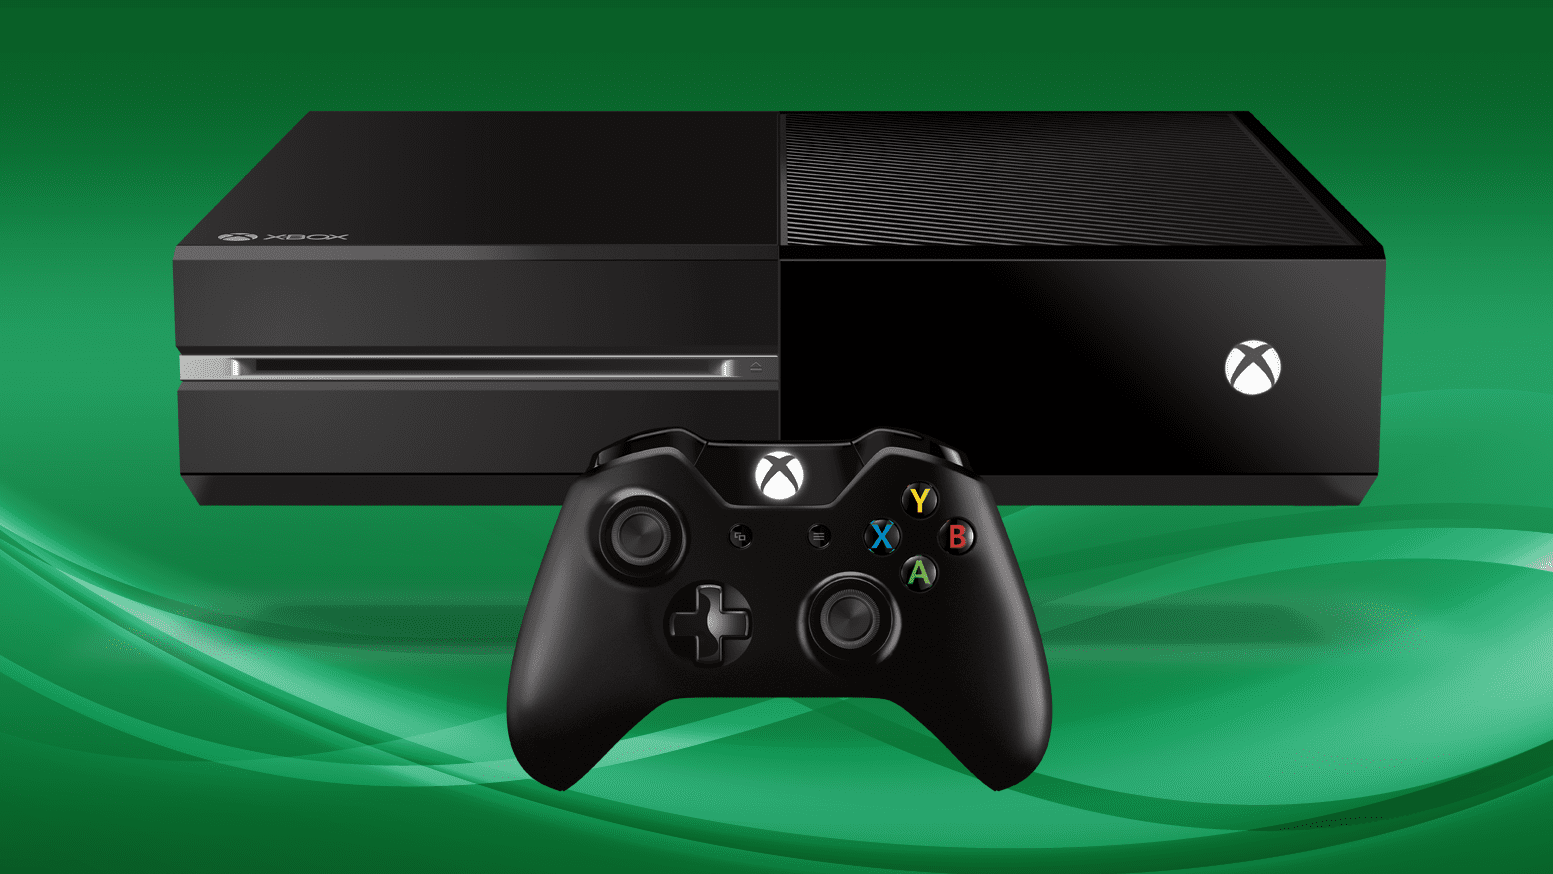 Outros sete jogos deixarão o Xbox Game Pass em breve - 8 a 15 de dezembro -  Windows Club